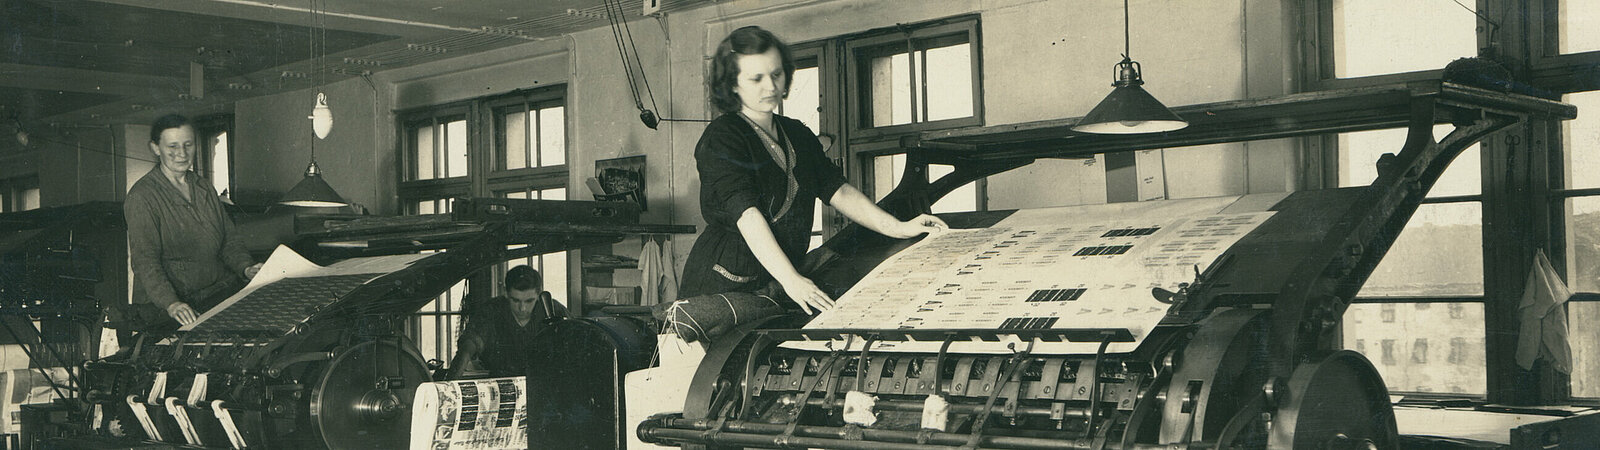 AddF-F1-00644; Arbeiterinnen in einer Druckerei, ca. 1936. Fotografin: Grete Karplus. GemeinfreiAddF-F1-00644; Arbeiterinnen in einer Druckerei, ca. 1936. Fotografin: Grete Karplus. Gemeinfrei